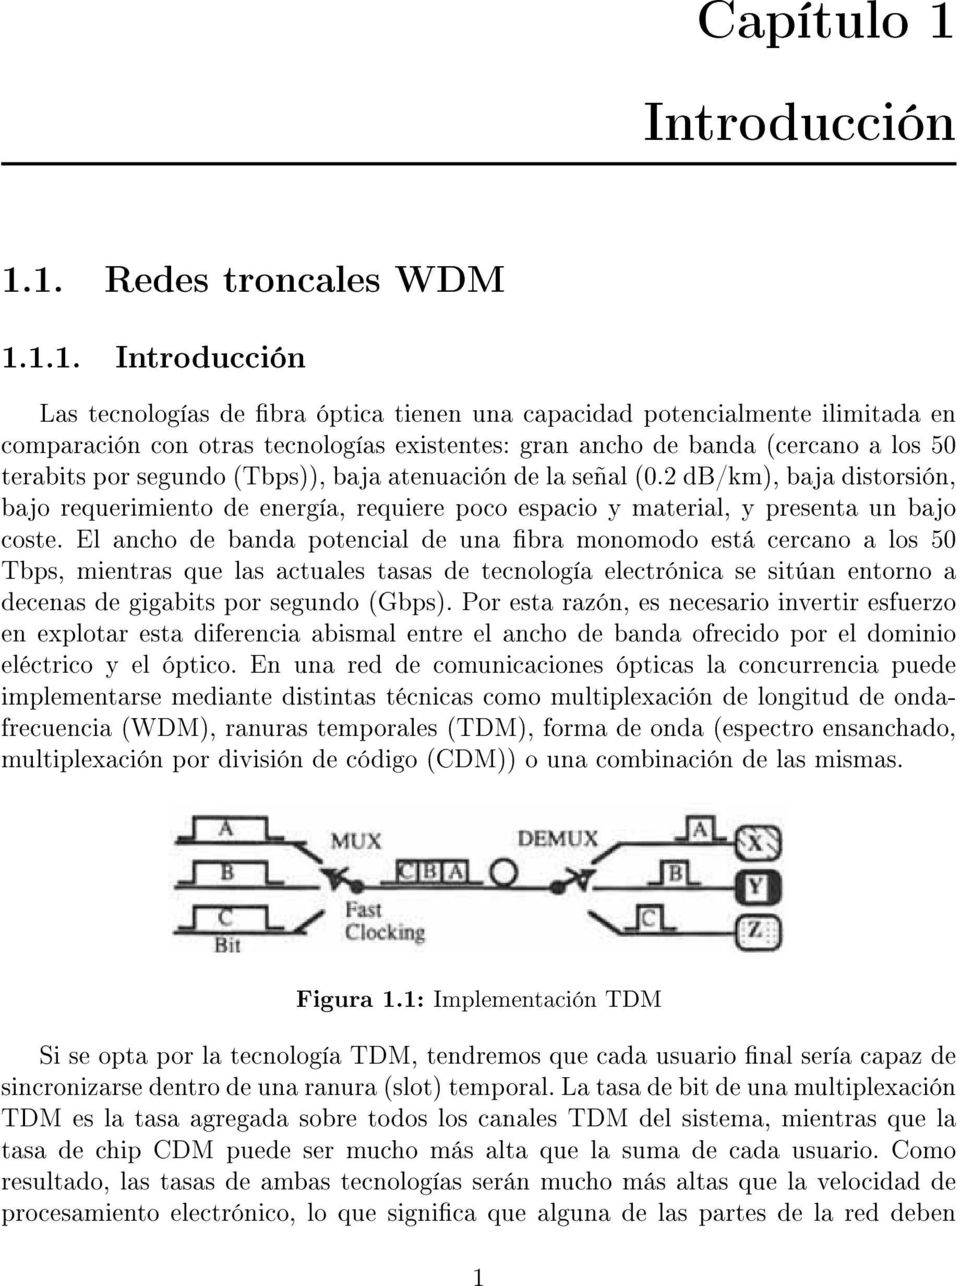 1. Redes troncales WDM 1.1.1. Introducción Las tecnologías de bra óptica tienen una capacidad potencialmente ilimitada en comparación con otras tecnologías existentes: gran ancho de banda (cercano a